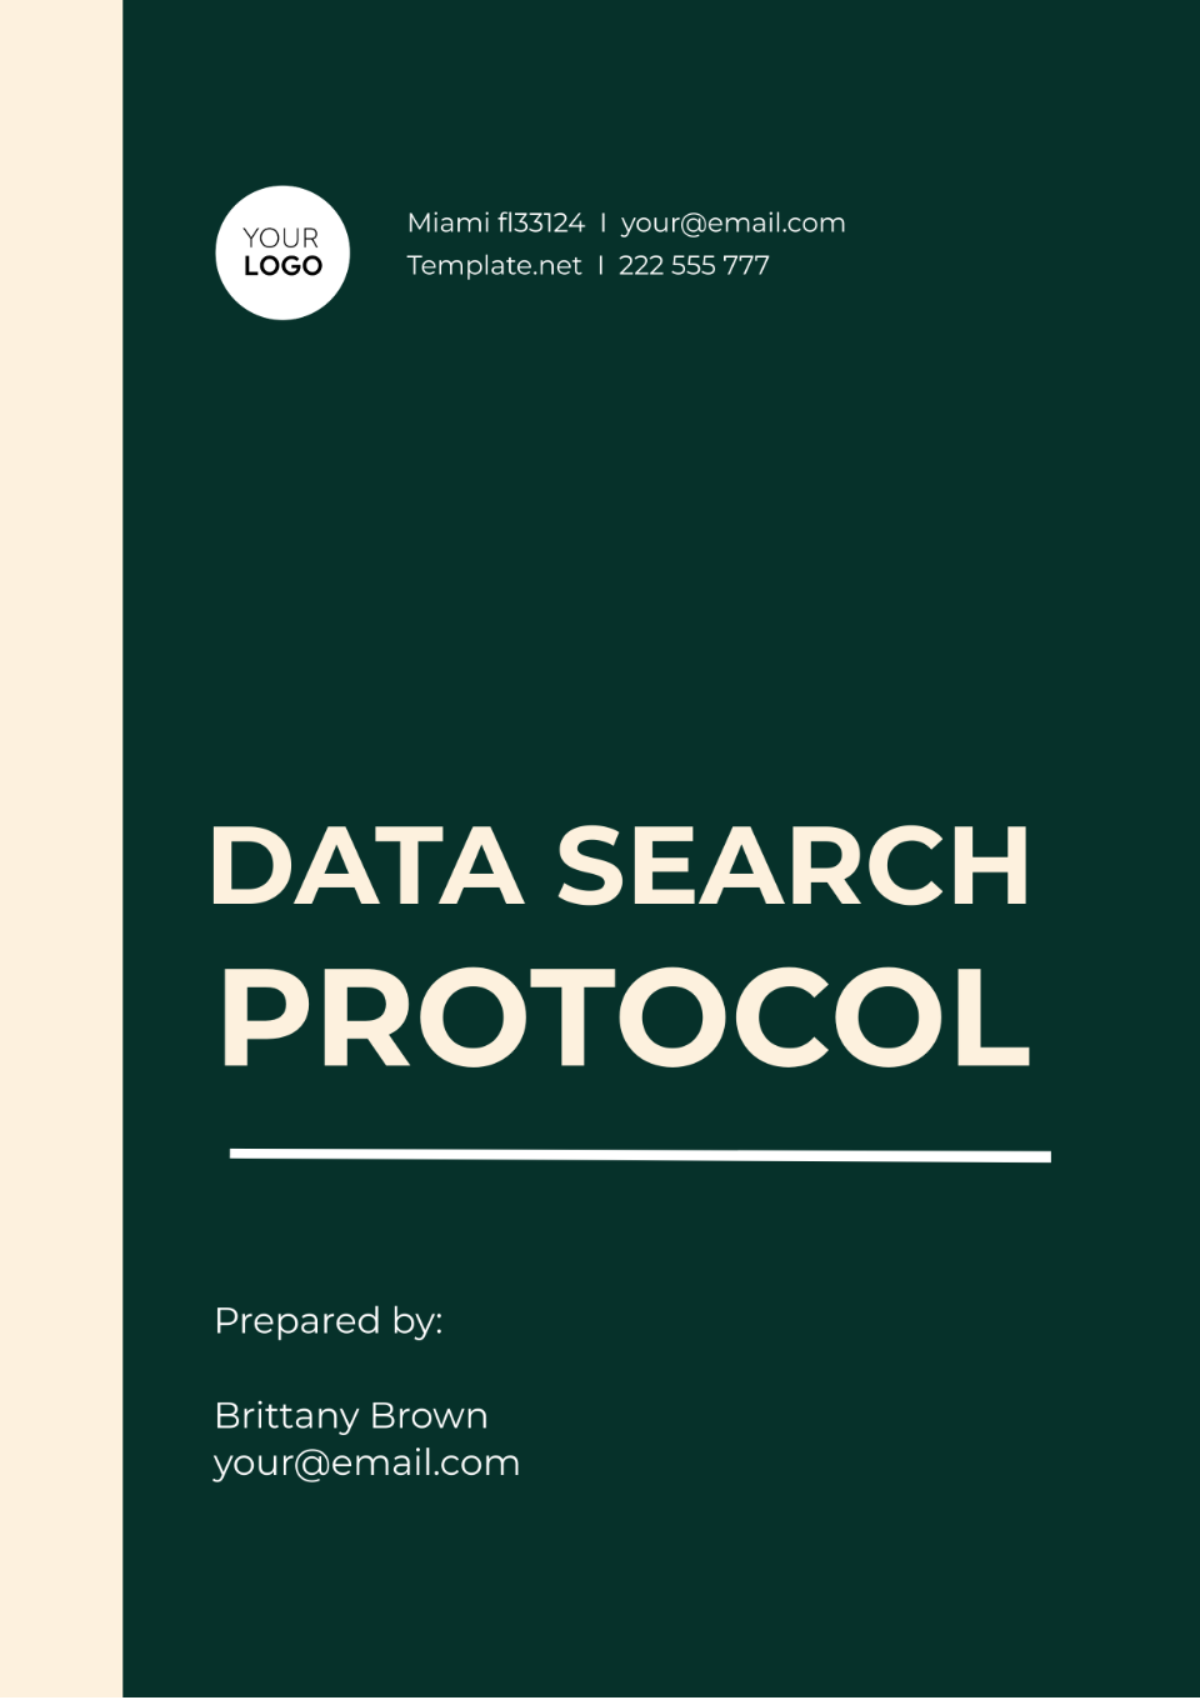 Data Search Protocol Template